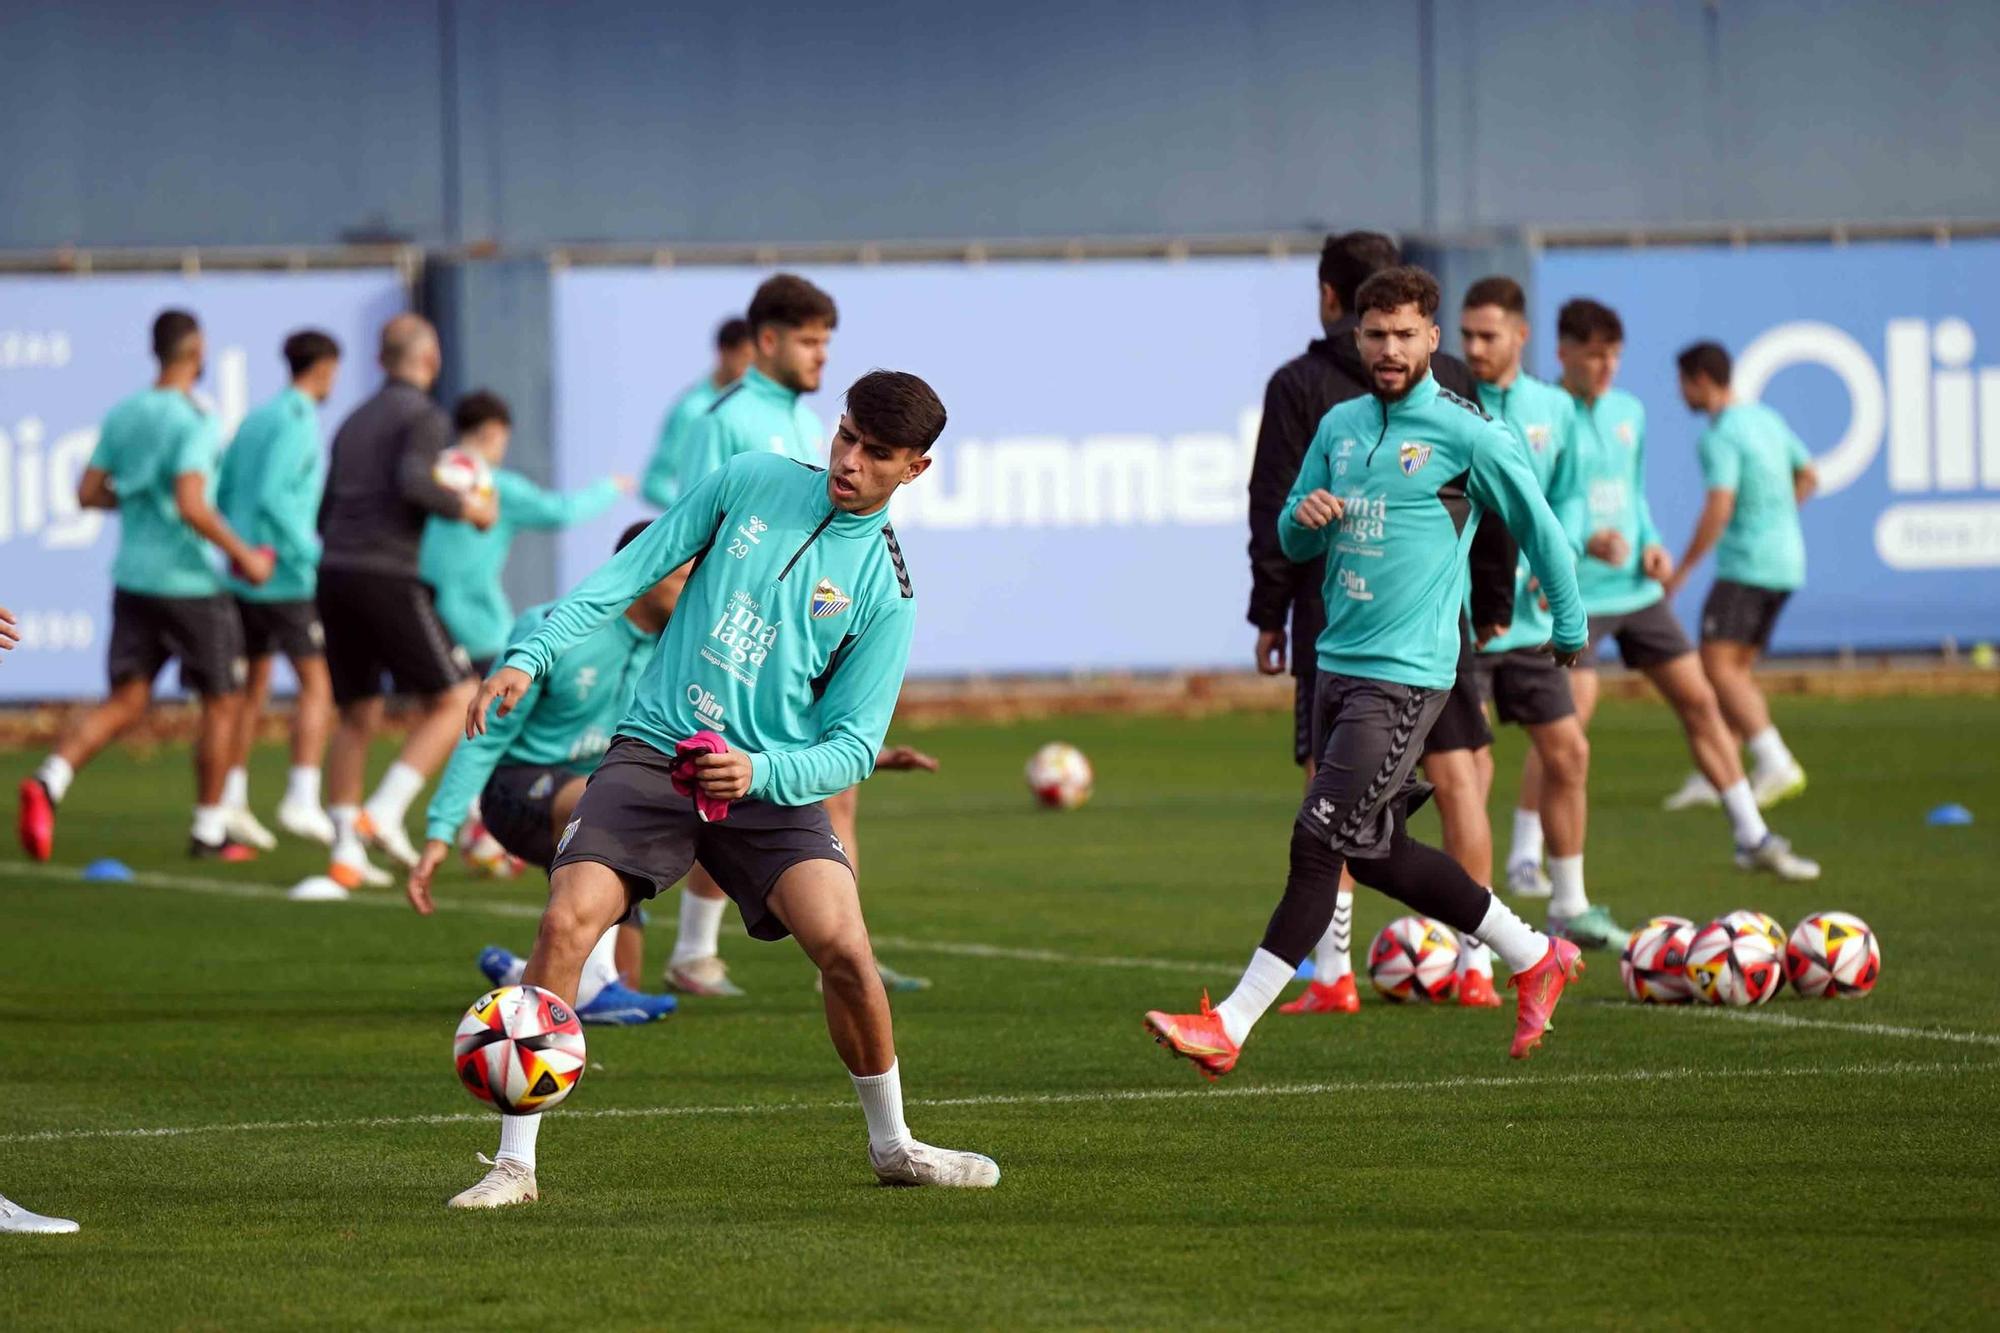 El Málaga CF retoma los entrenamientos tras el choque de Copa